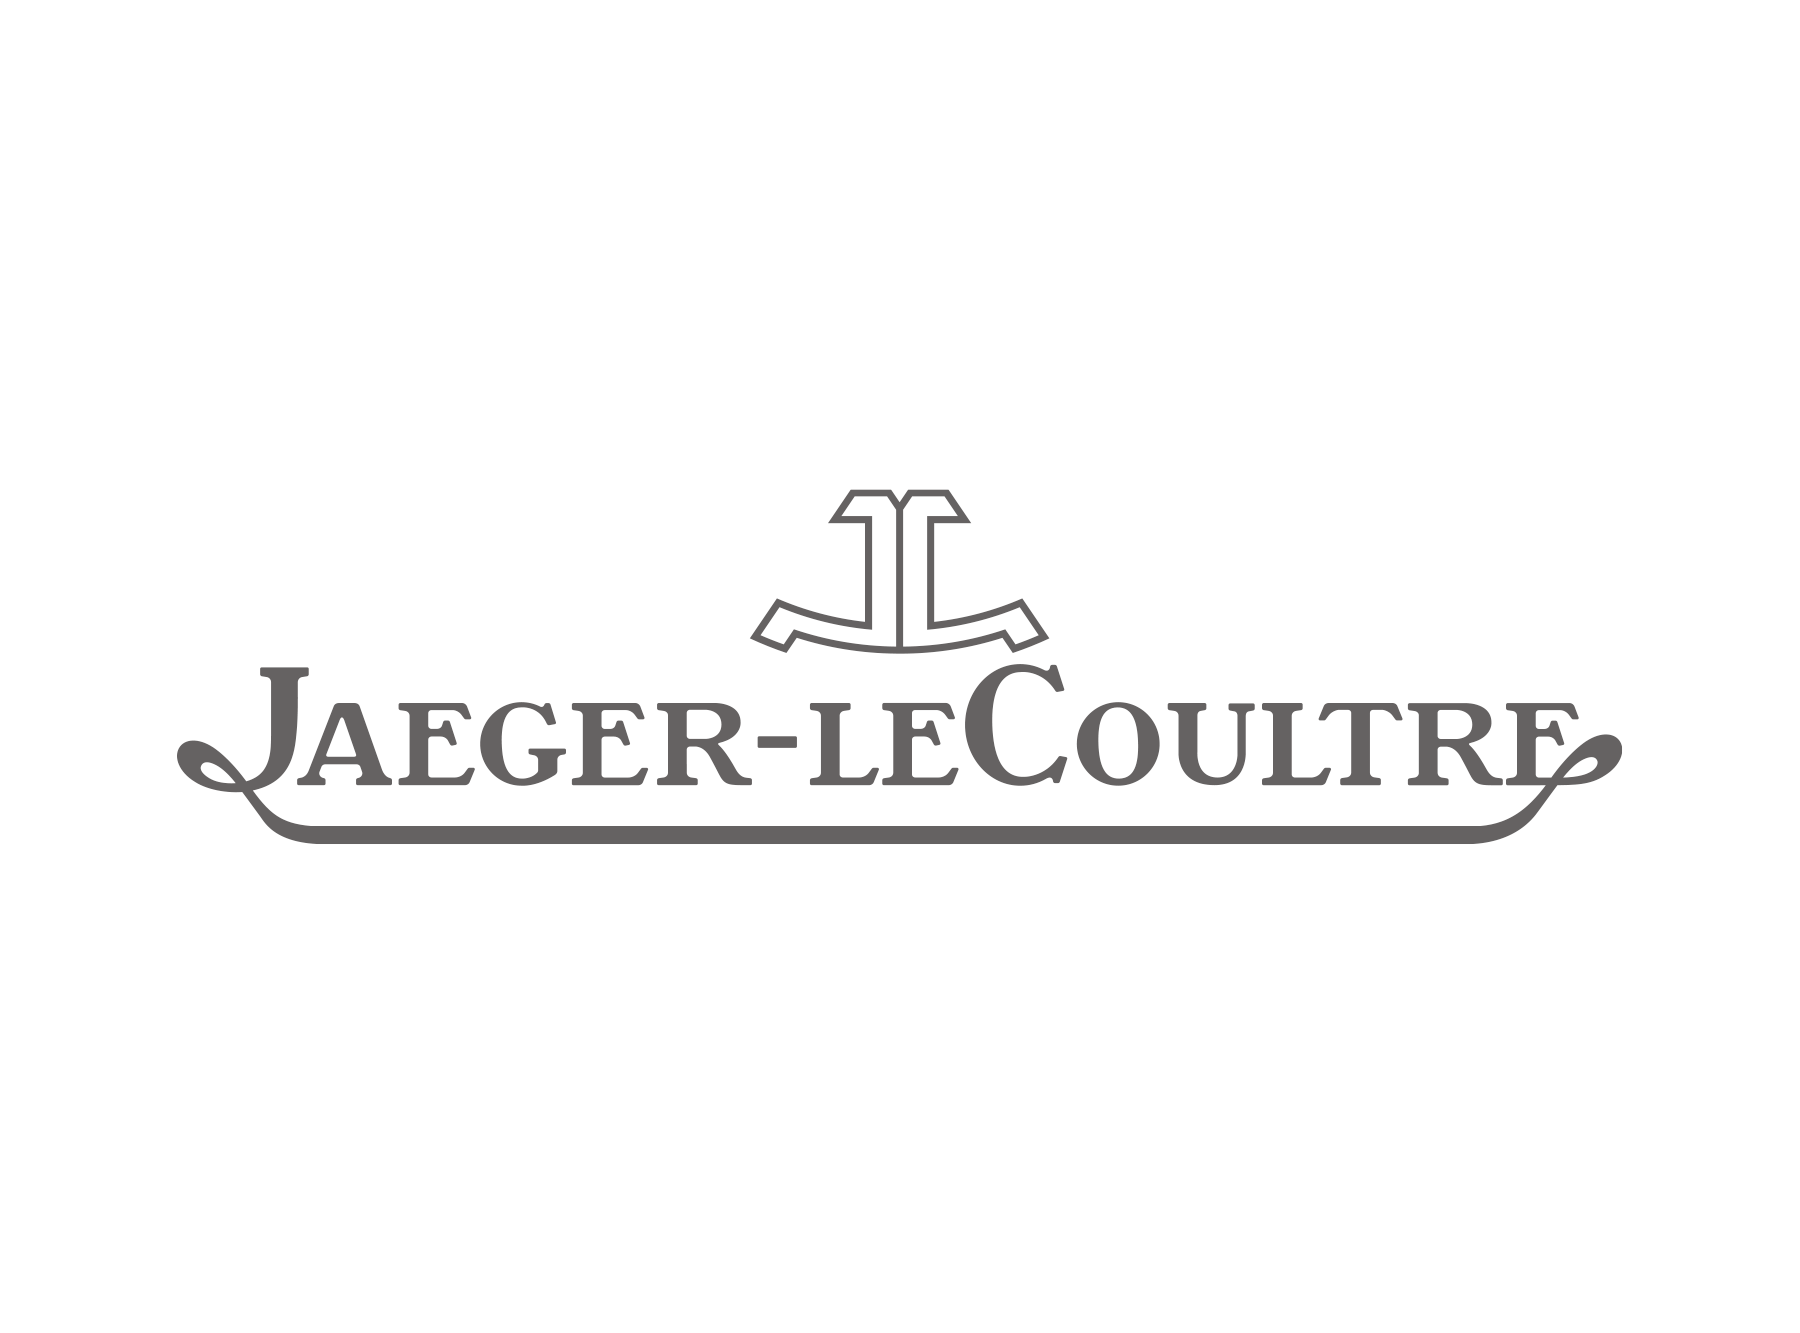 Jaeger LeCoultre